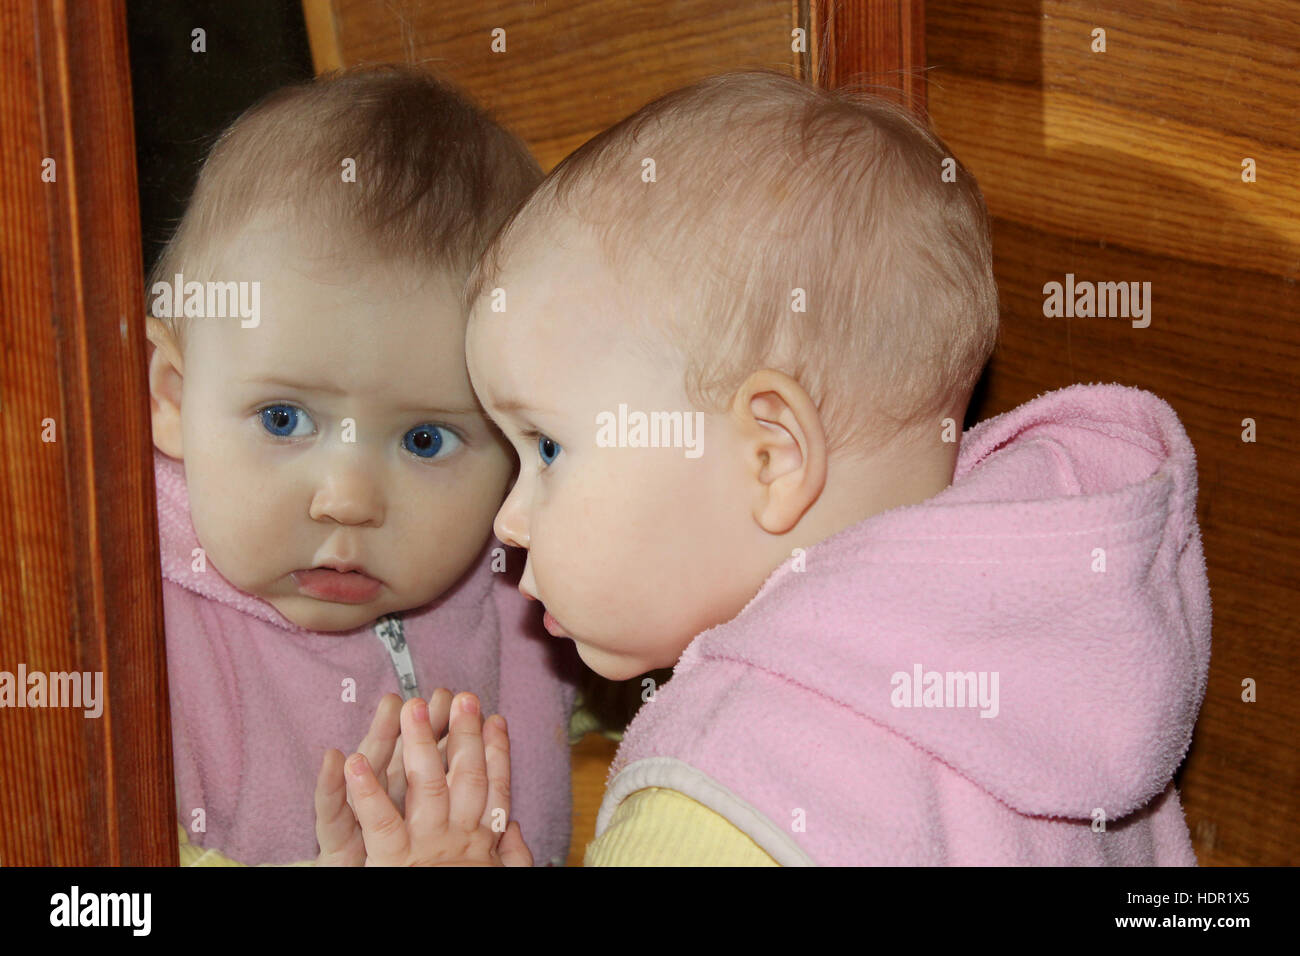 Divertido bebé se mira a sí misma delante del espejo Foto de stock